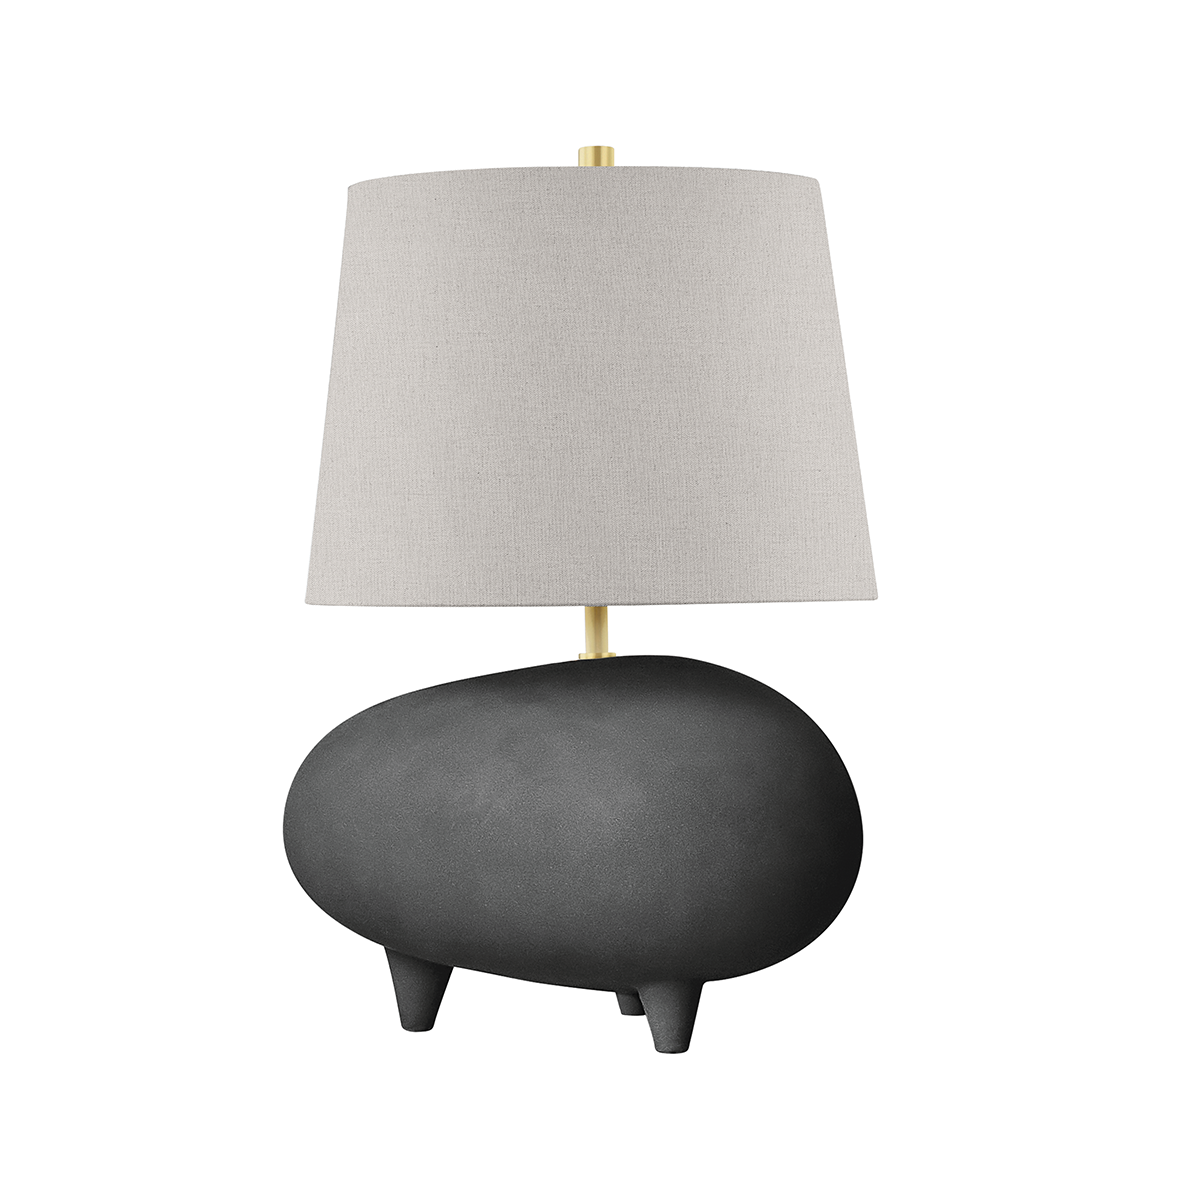 Hudson Valley Lighting Tiptoe Table Lamp